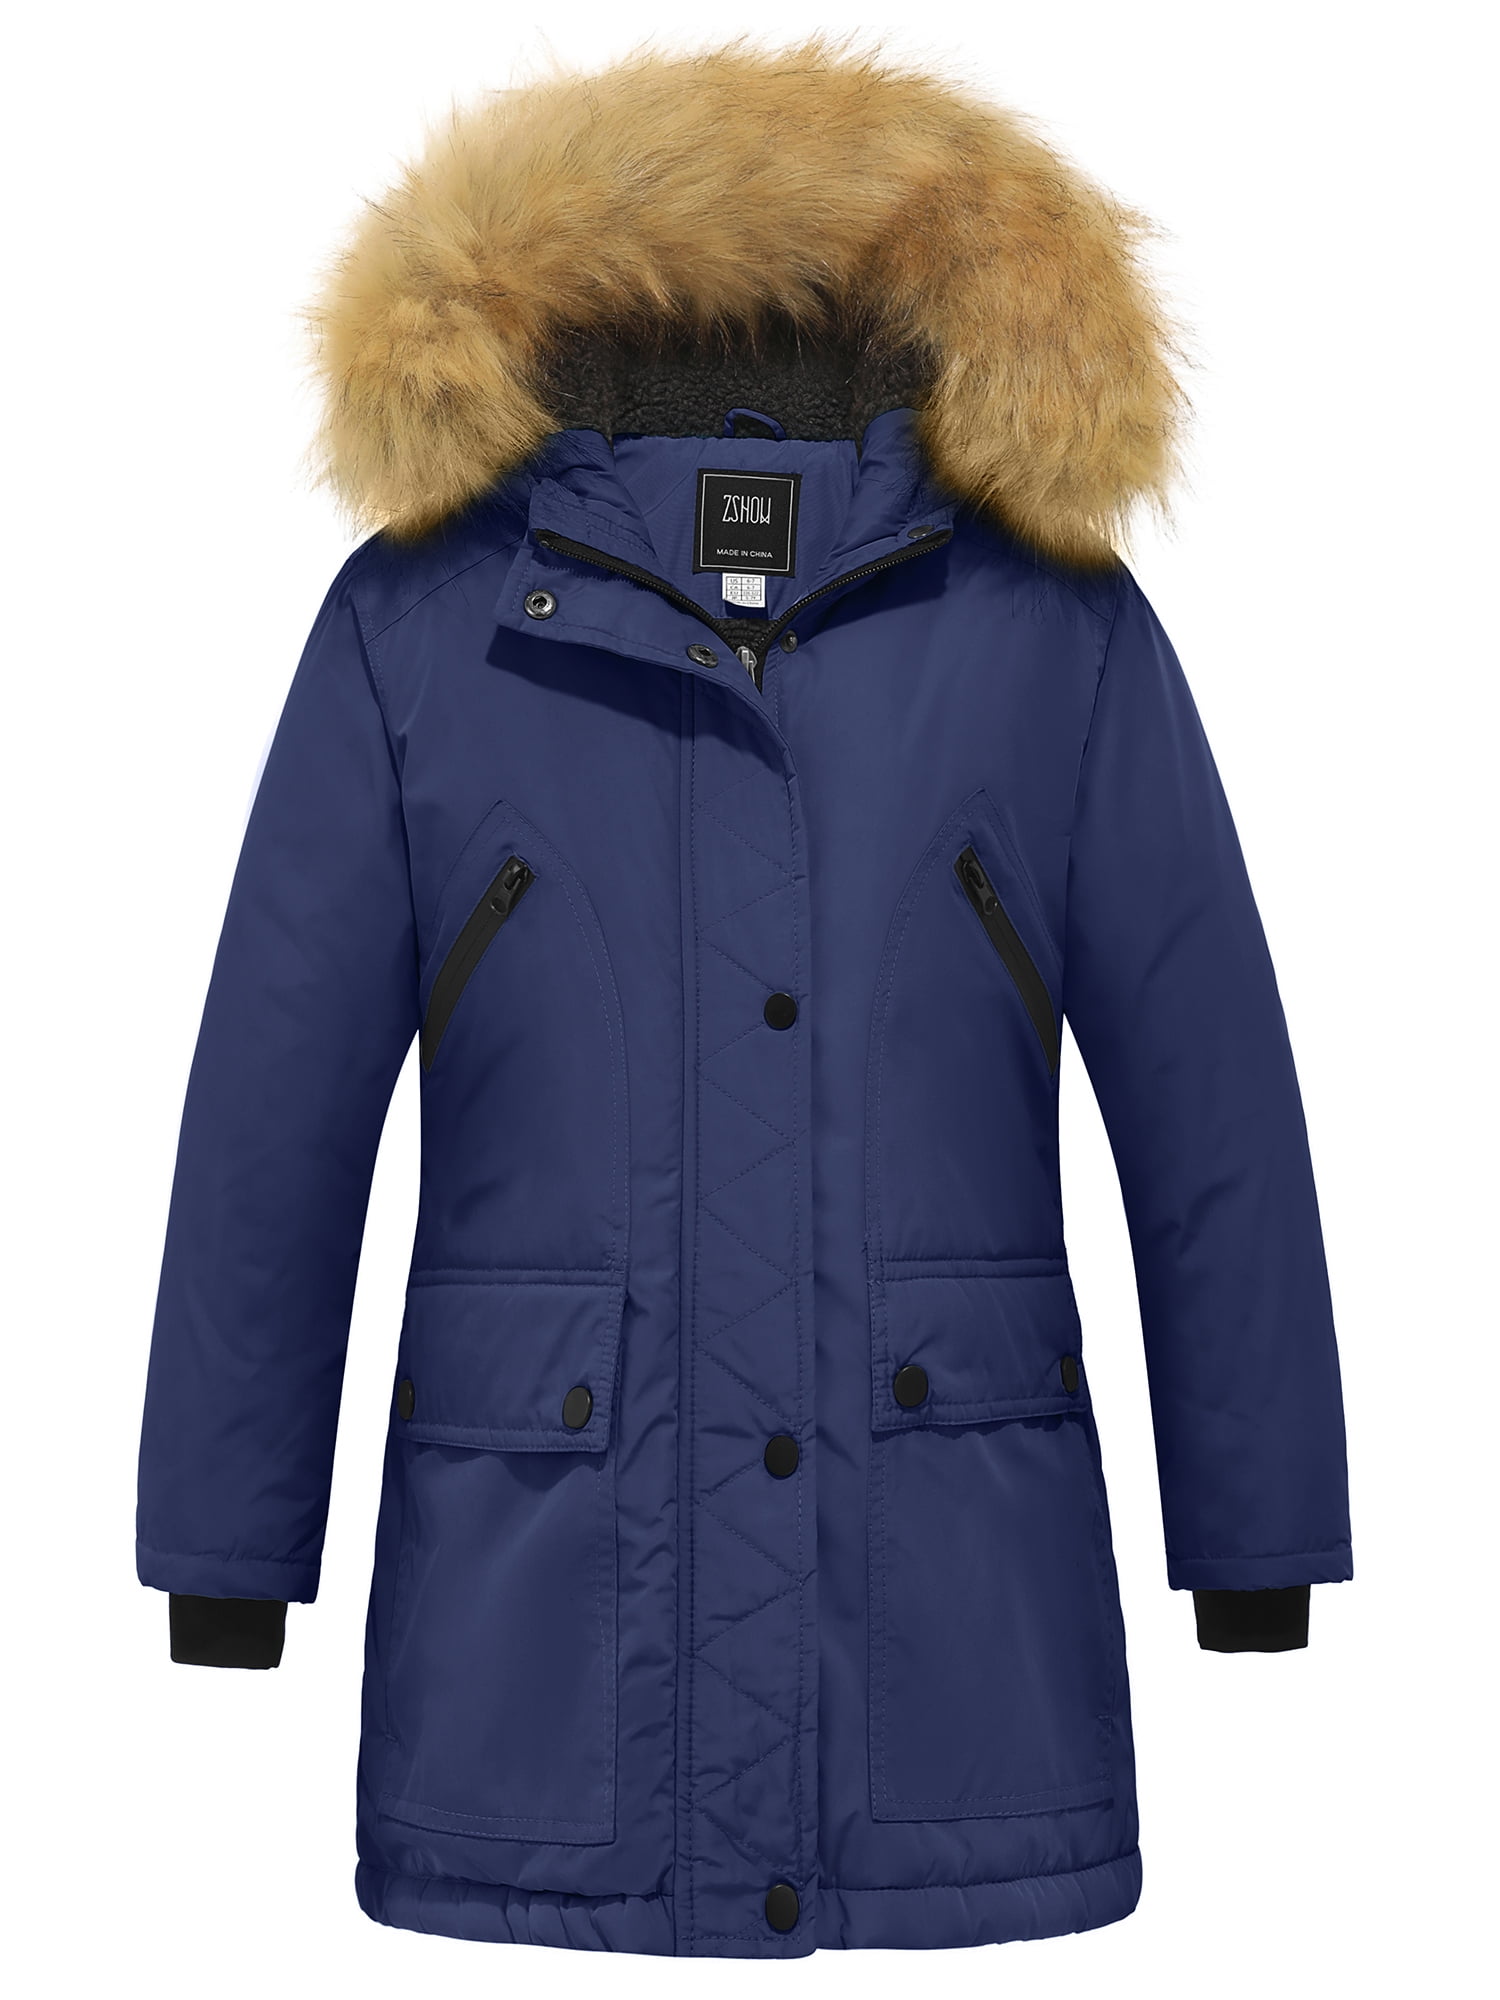 ZSHOW Girls' Winter Coat Waterproof Puffer Jacket Winter Parka Jacket ...